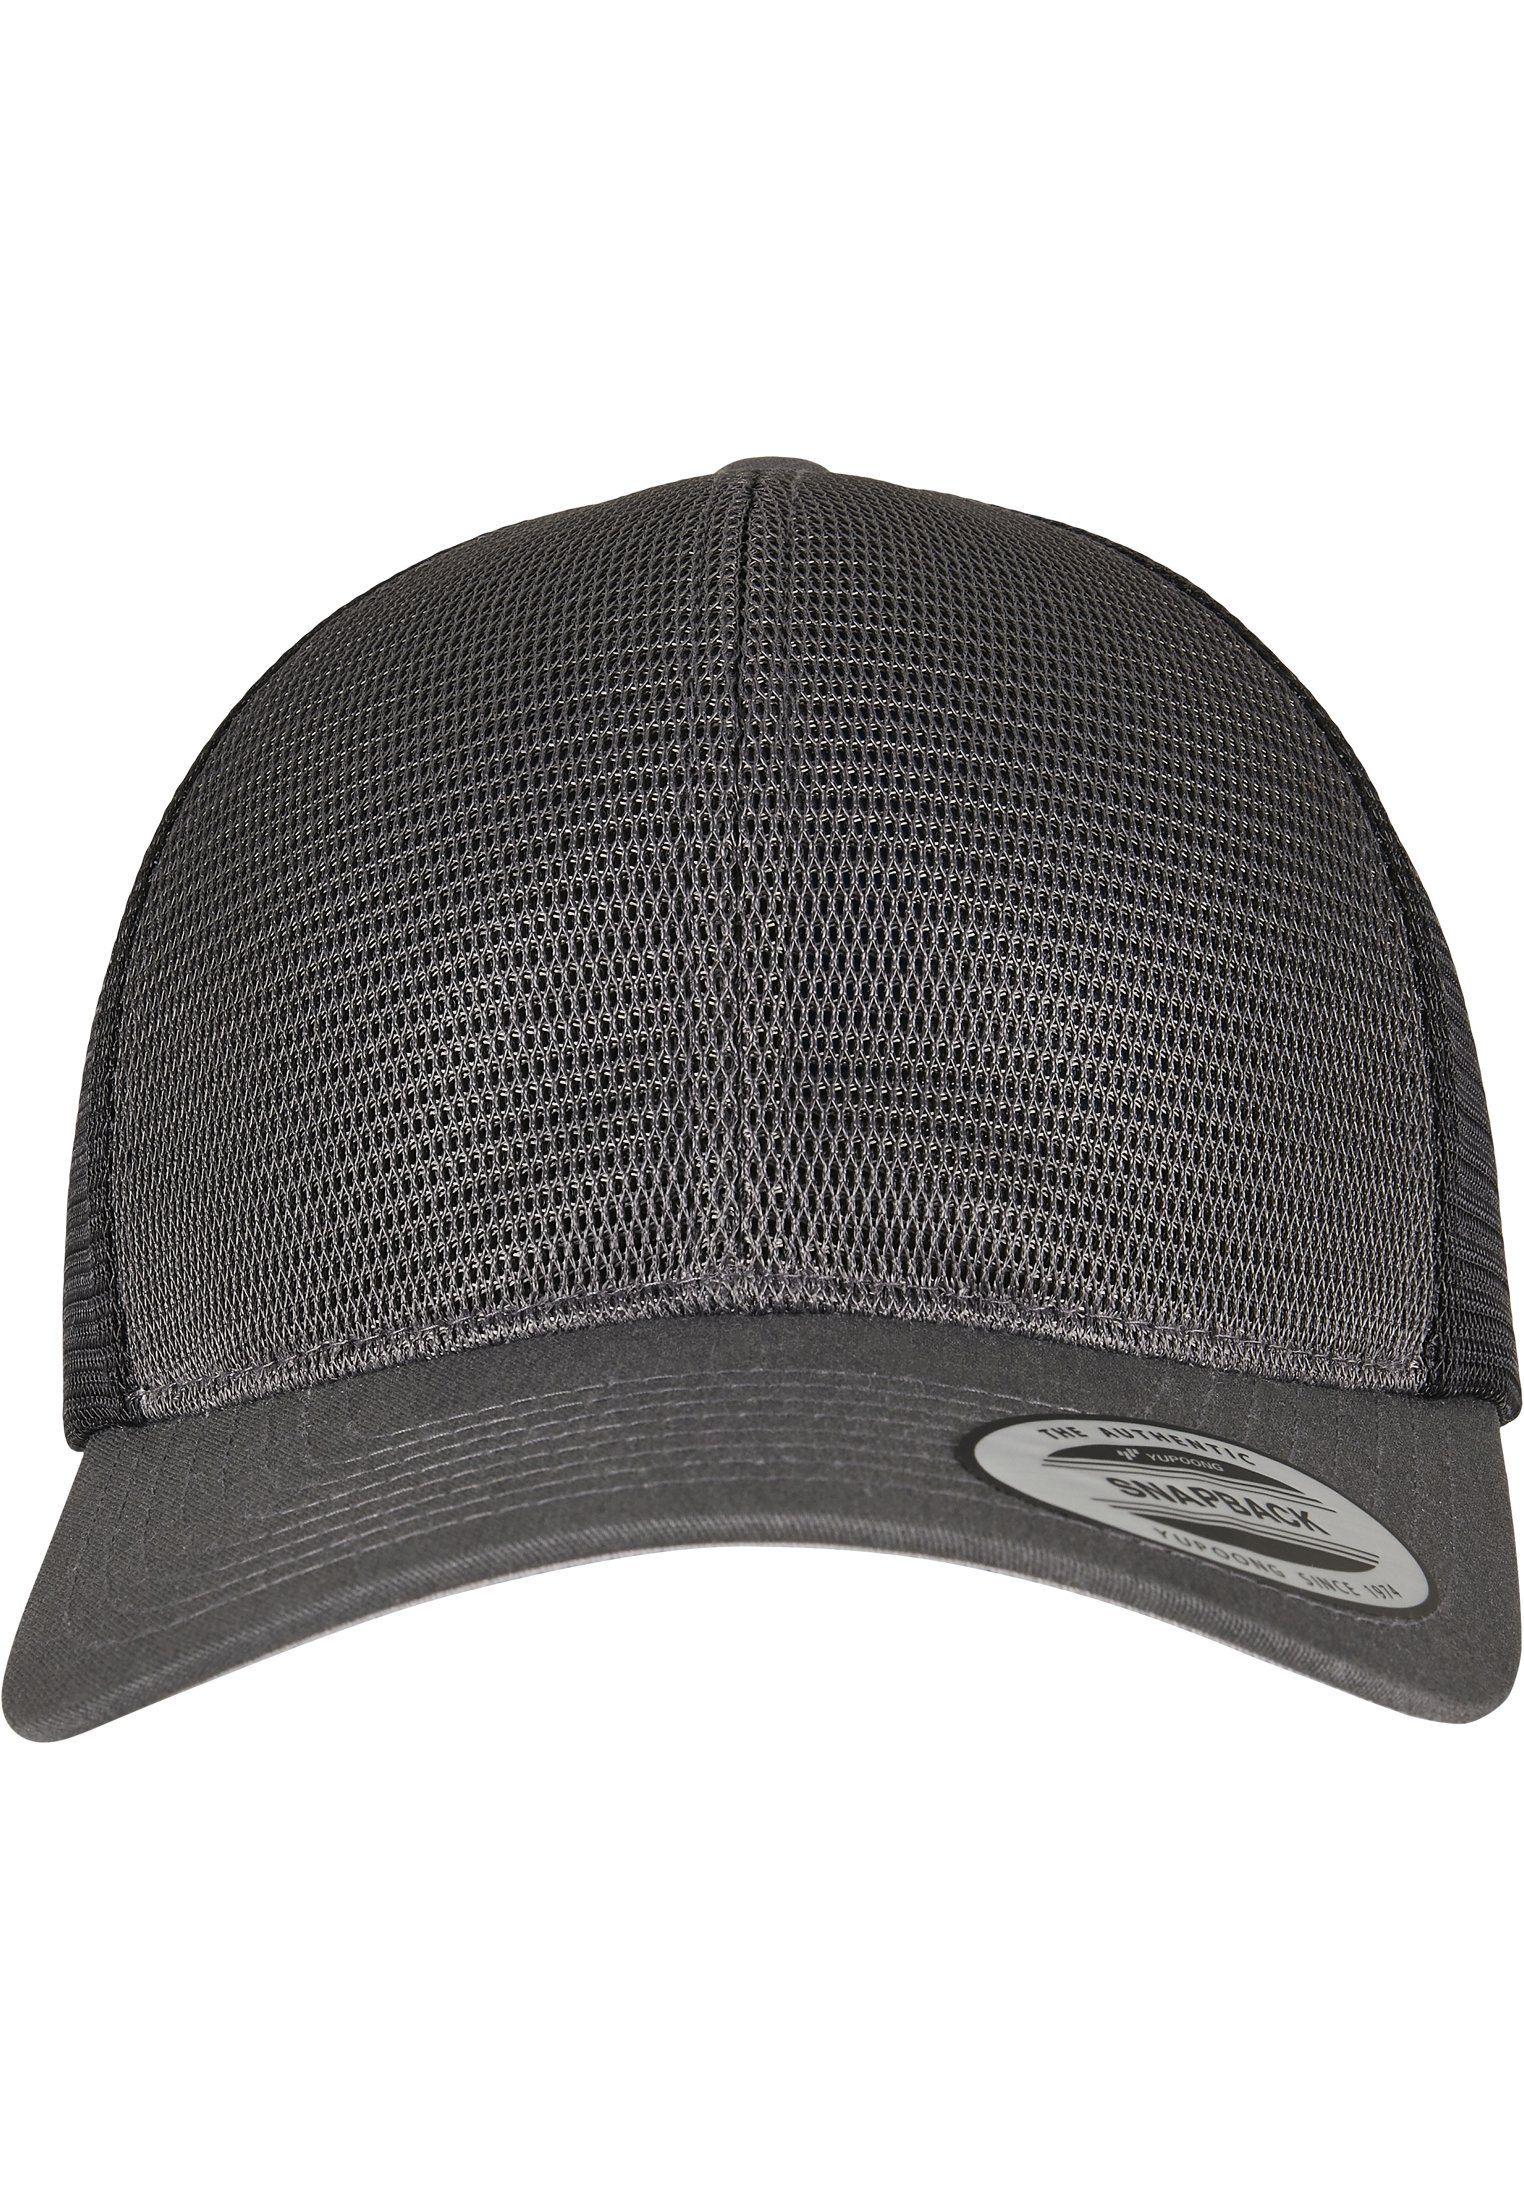 360° Omnimesh charcoal/black Accessoires Cap Cap 2-Tone Flex Flexfit